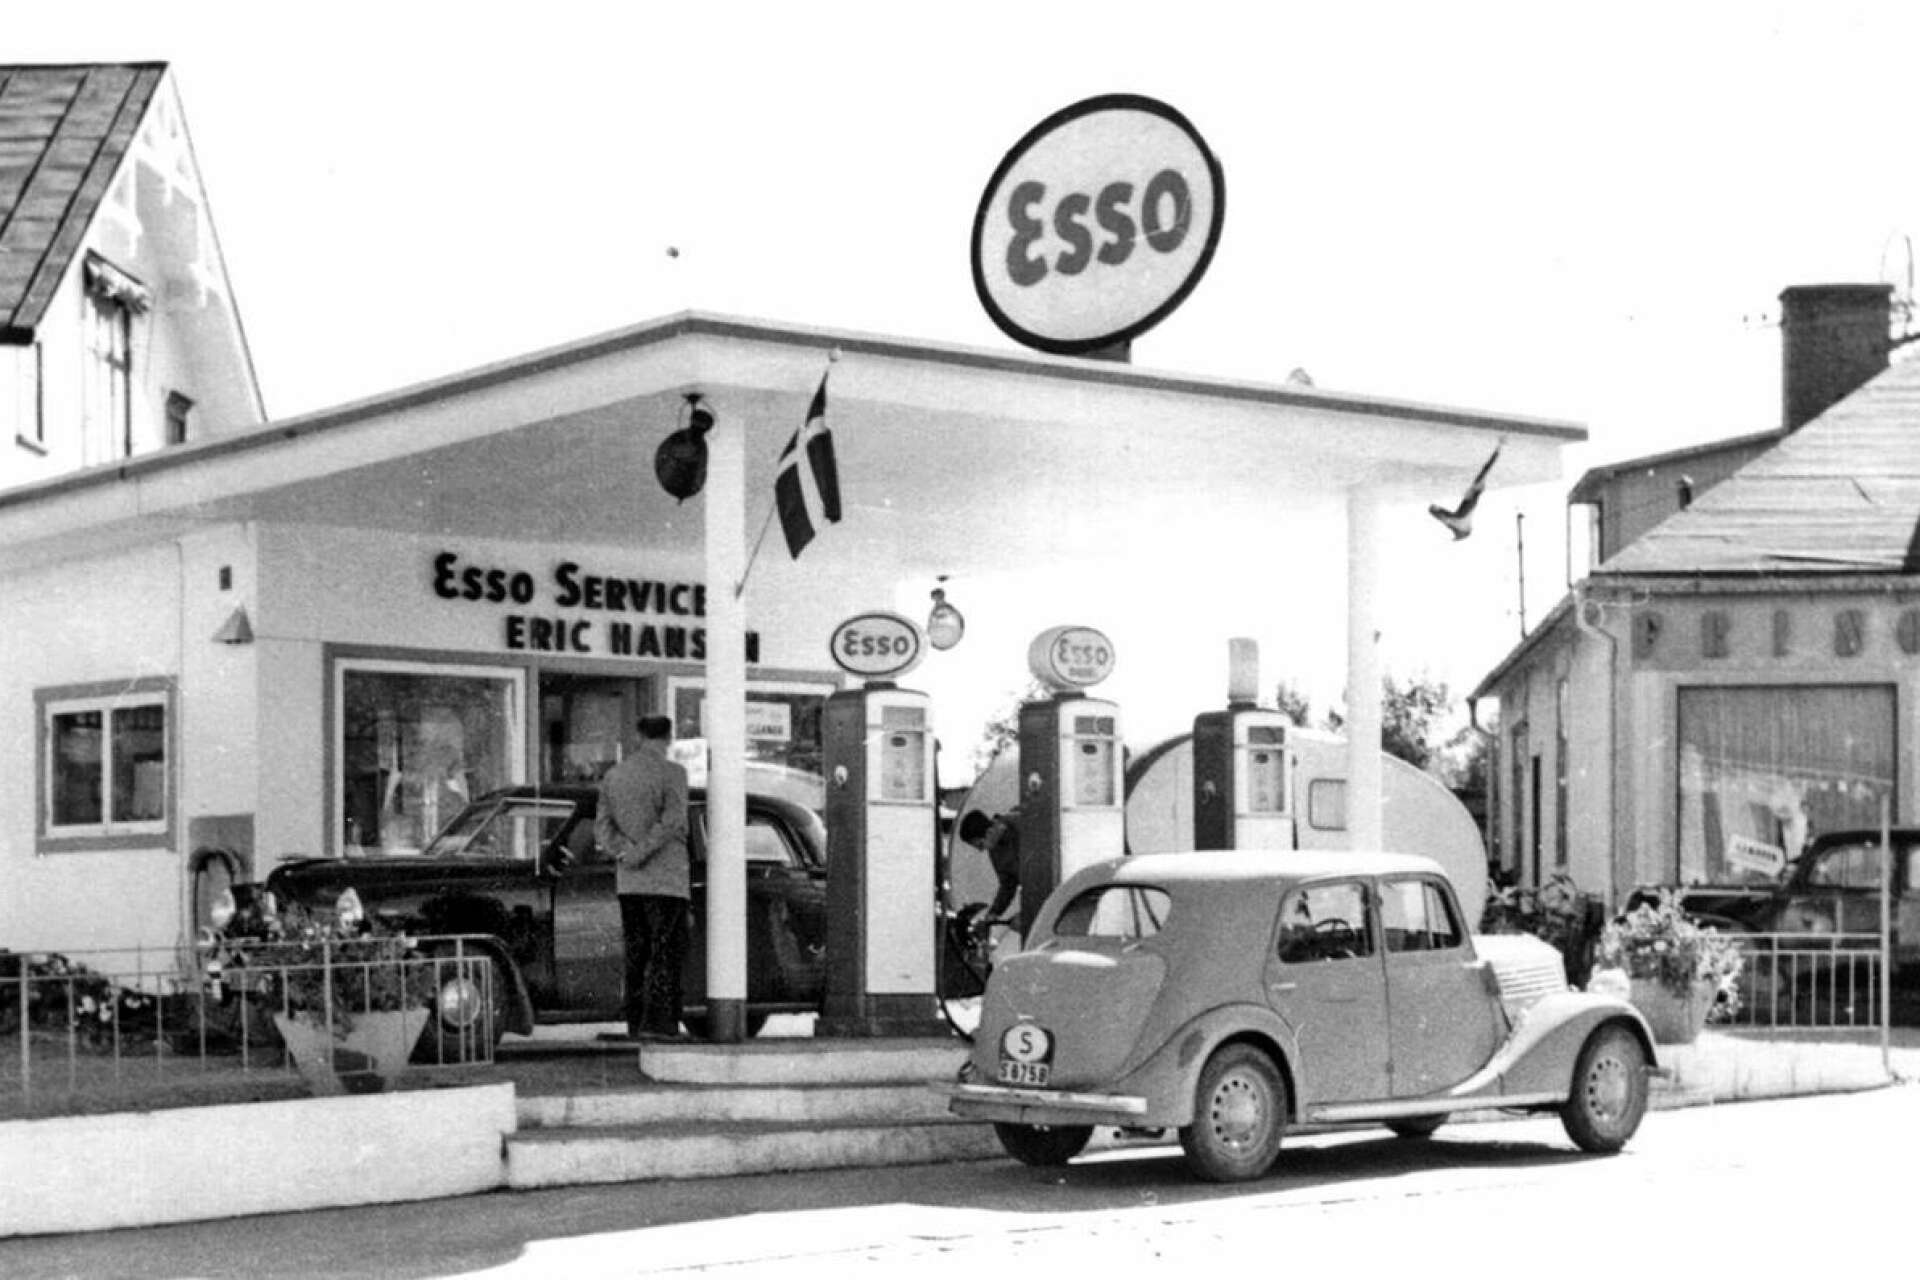 Flera bensinstationer fanns tidigt längs Karlstadsvägen. En av dessa var Esso. När bensinförsäljningen med tiden upphörde blev före detta macken Säffles turistbyrå under några år.